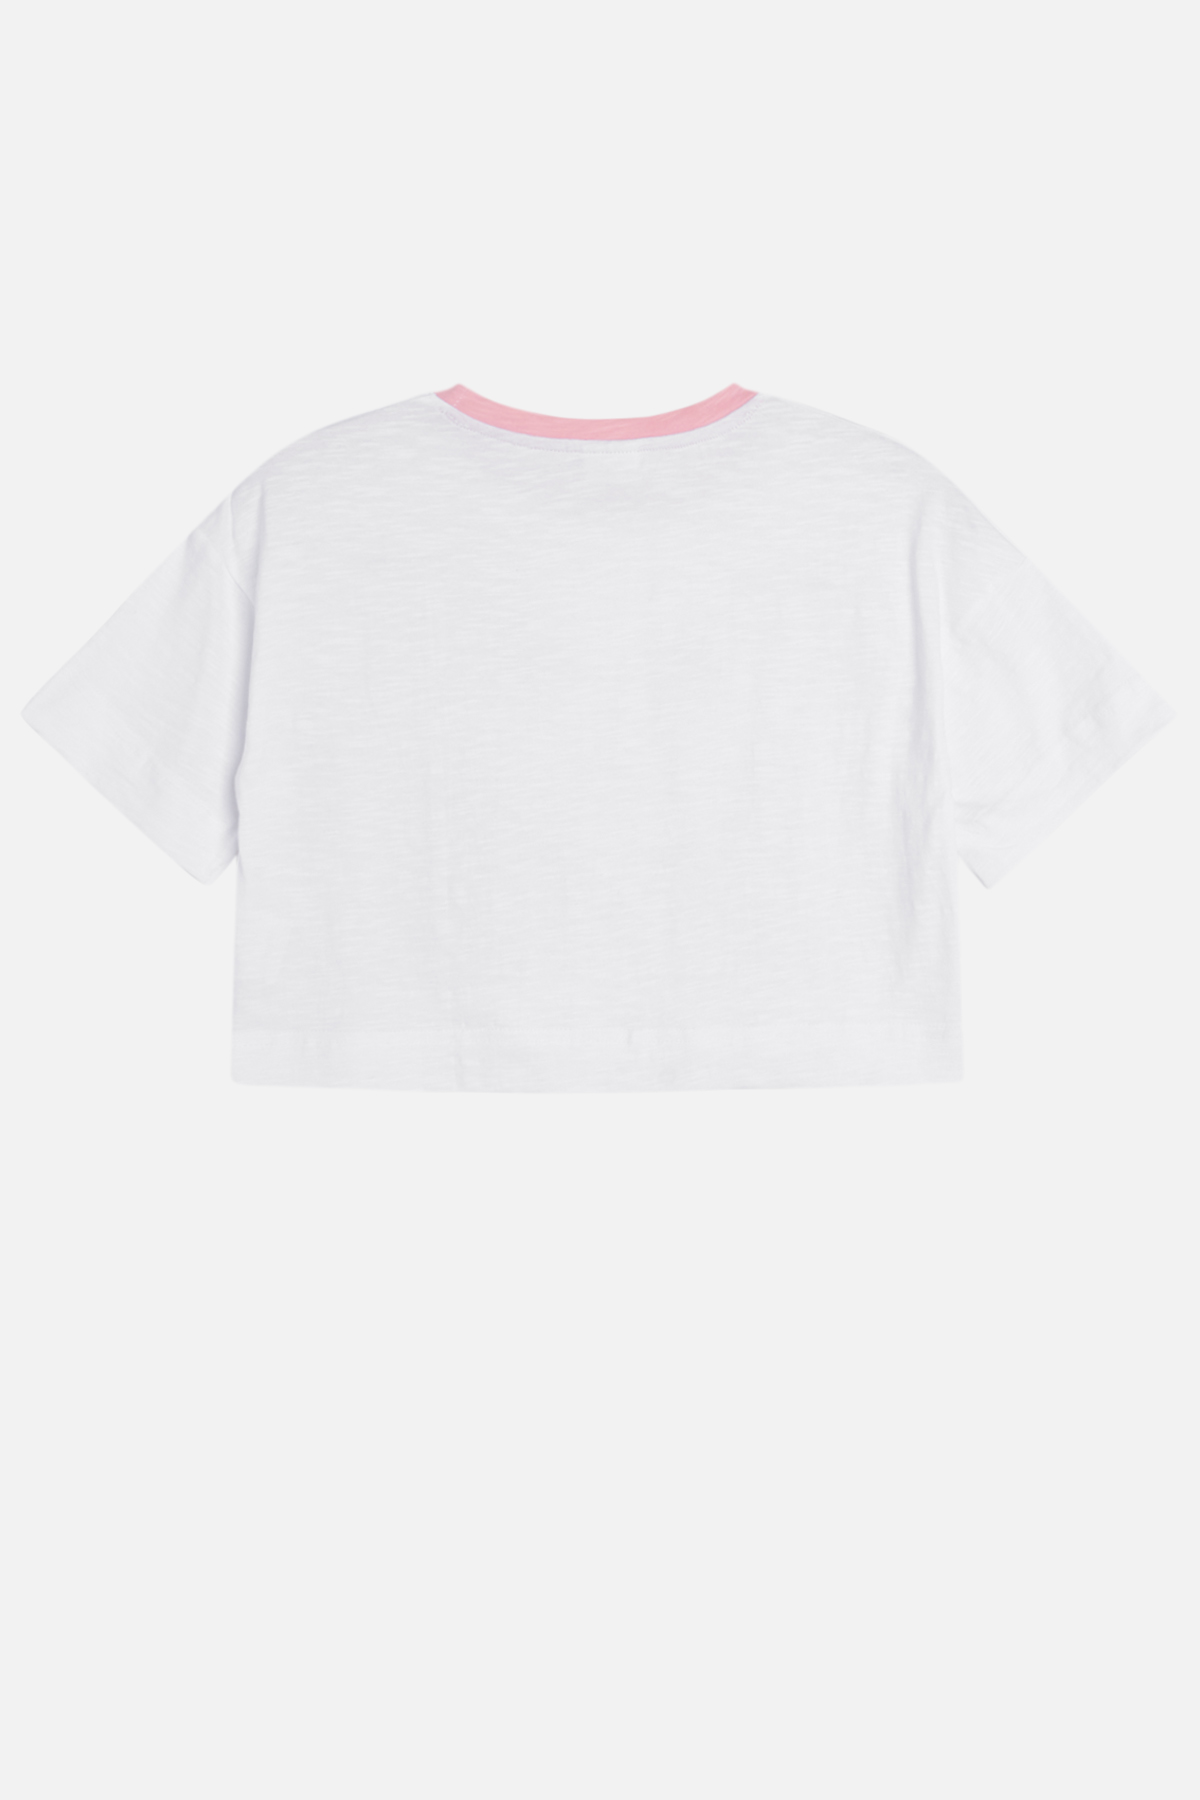 T-Shirt gelb/pink/weiß 128 Hust and Claire Blumen